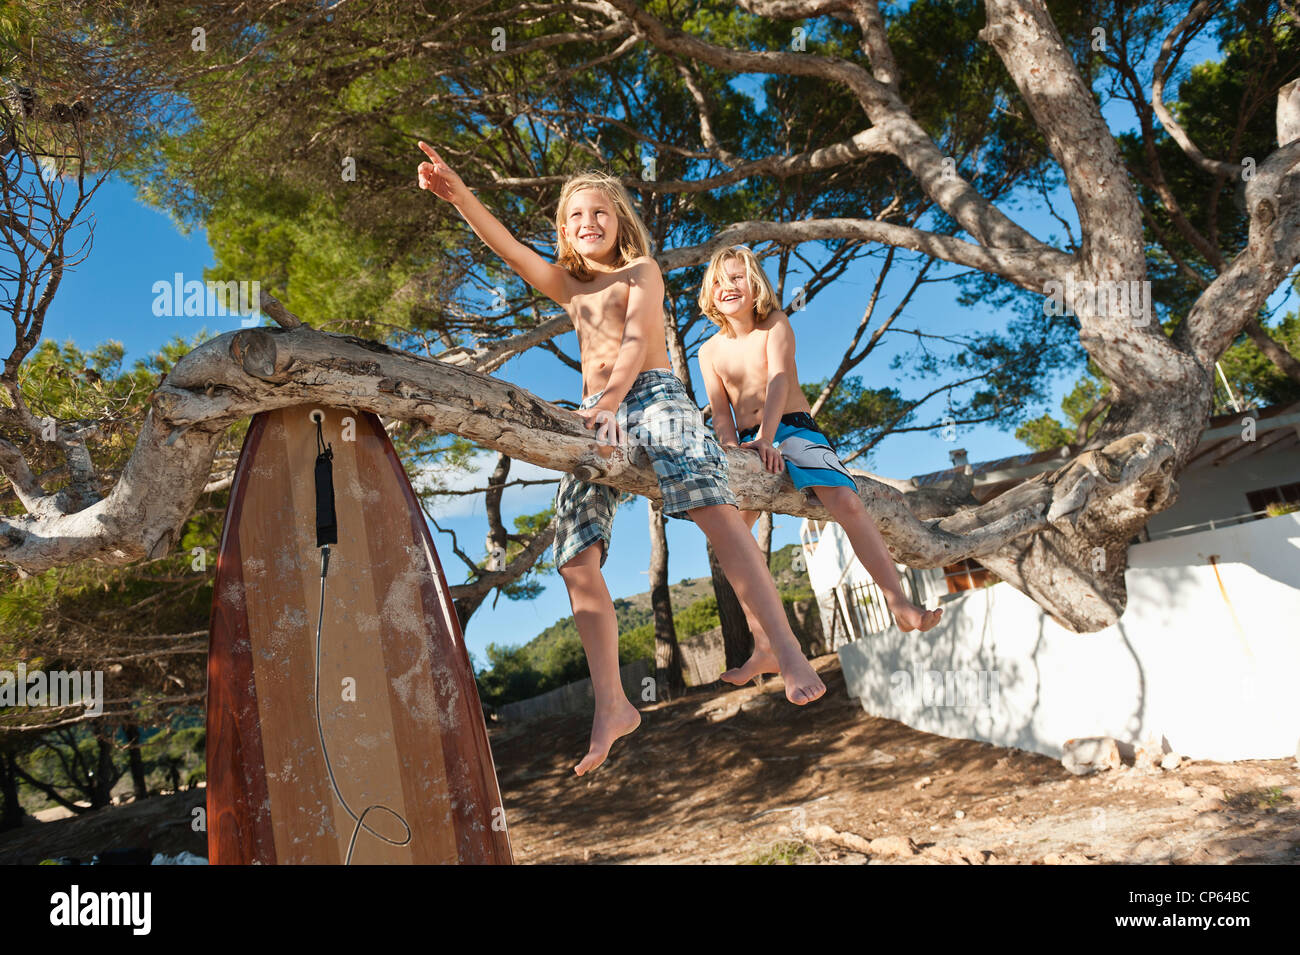 Spain, Mallorca, Children sitting on tree Stock Photo